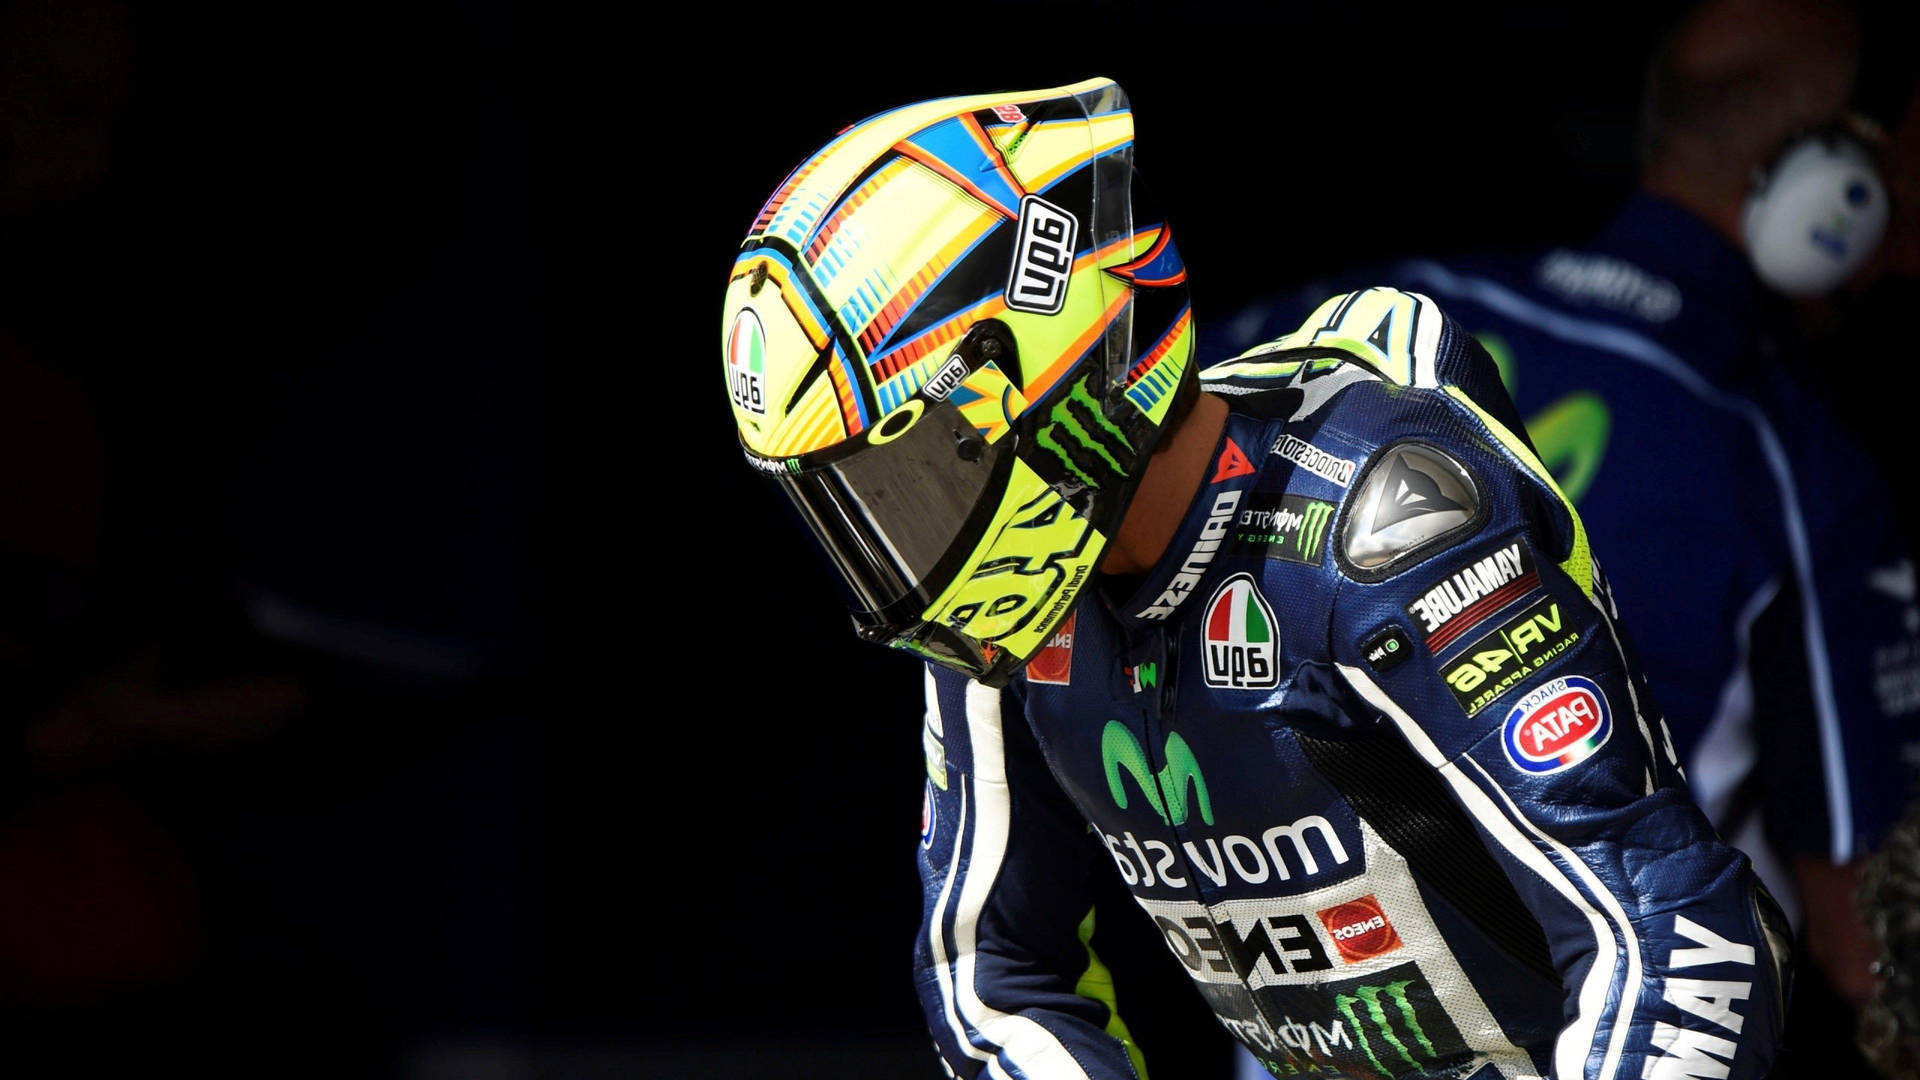 Valentino Rossi Monster Energy Avg Helmet Background